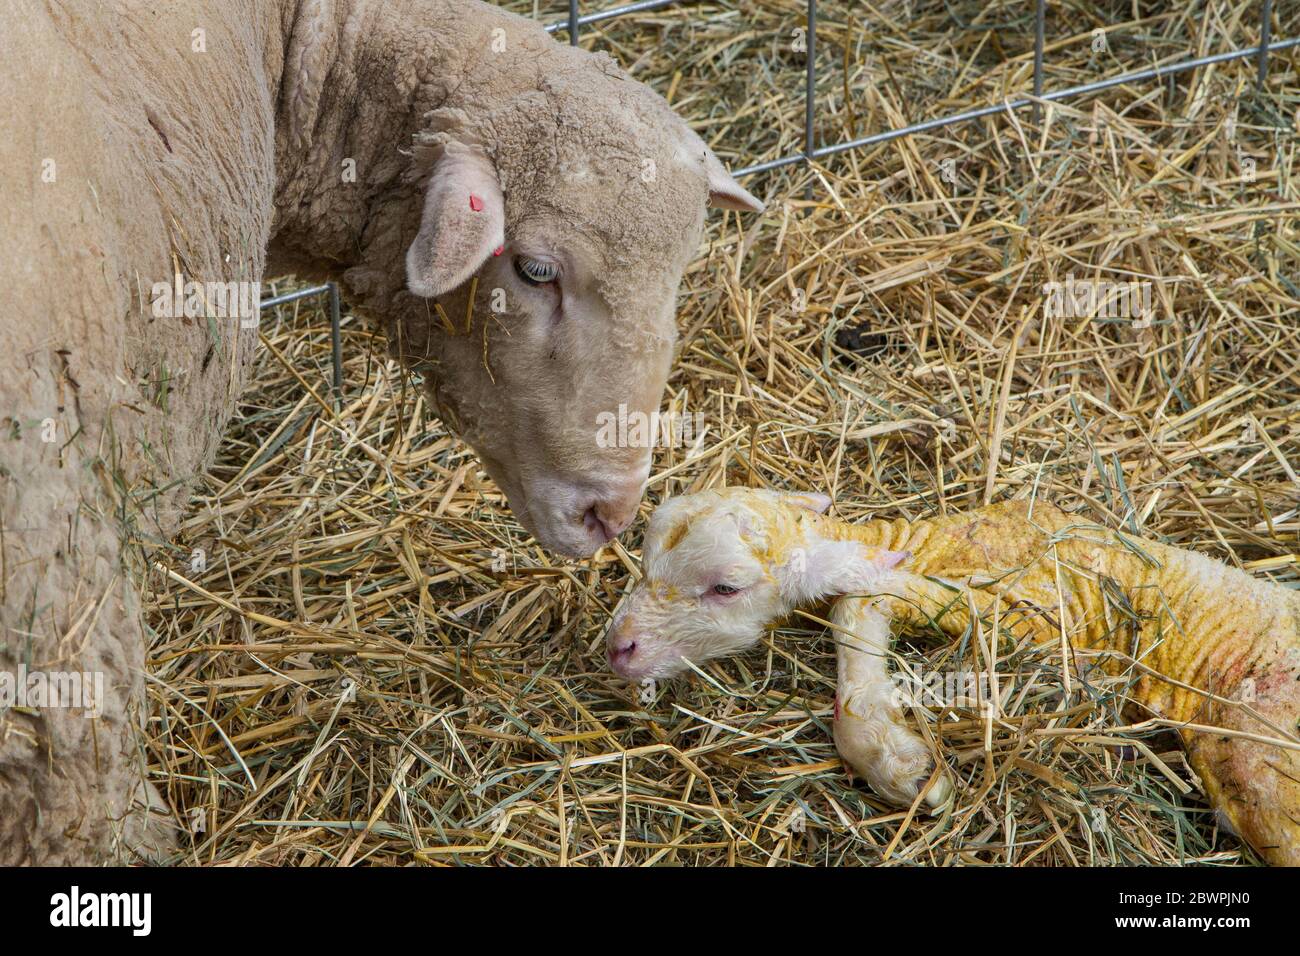 Un cordero recién nacido de menos de una hora de edad Foto de stock